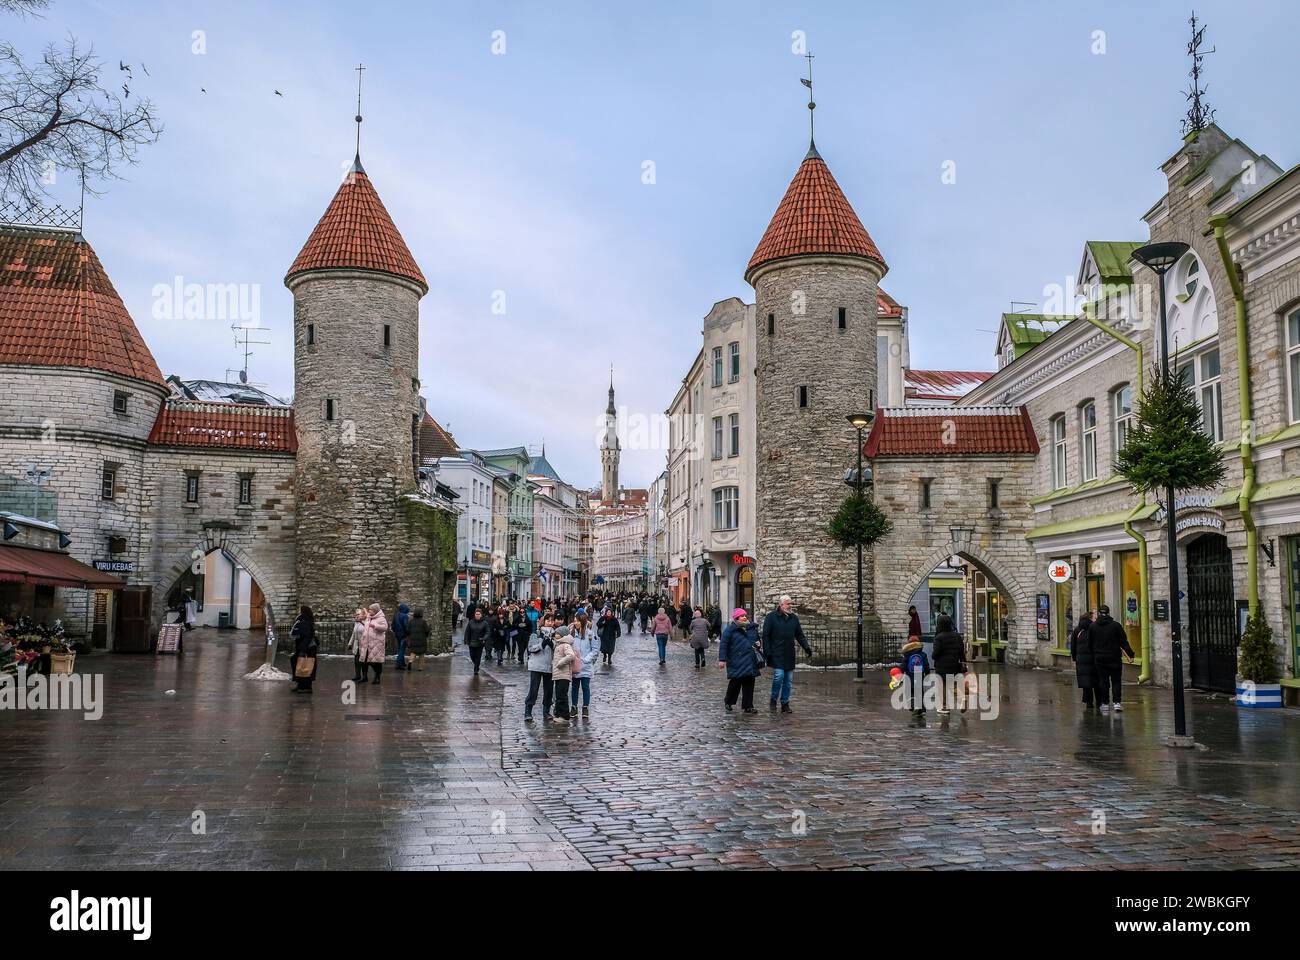 Tallinn, Estonia - la città vecchia di Tallinn, la porta di argilla, le torri di guardia della porta medievale della città Viru, il Viru è la strada principale dello shopping della città, dietro la torre del municipio nella piazza del municipio. Foto Stock